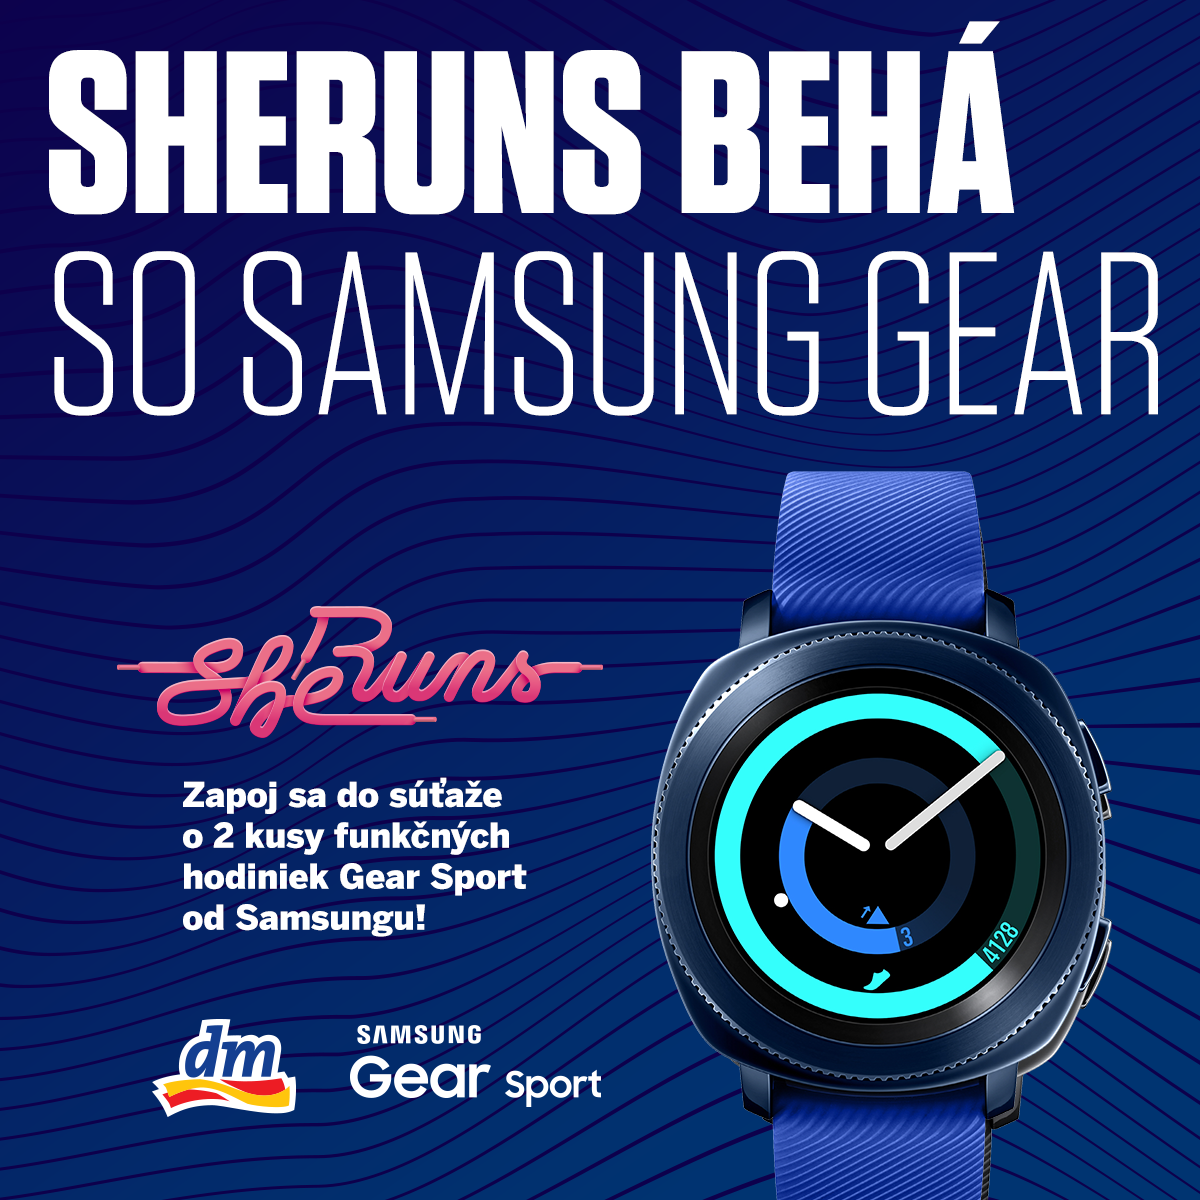 SHEruns behá so Samsung Gear - ako sa zapojiť do súťaže?